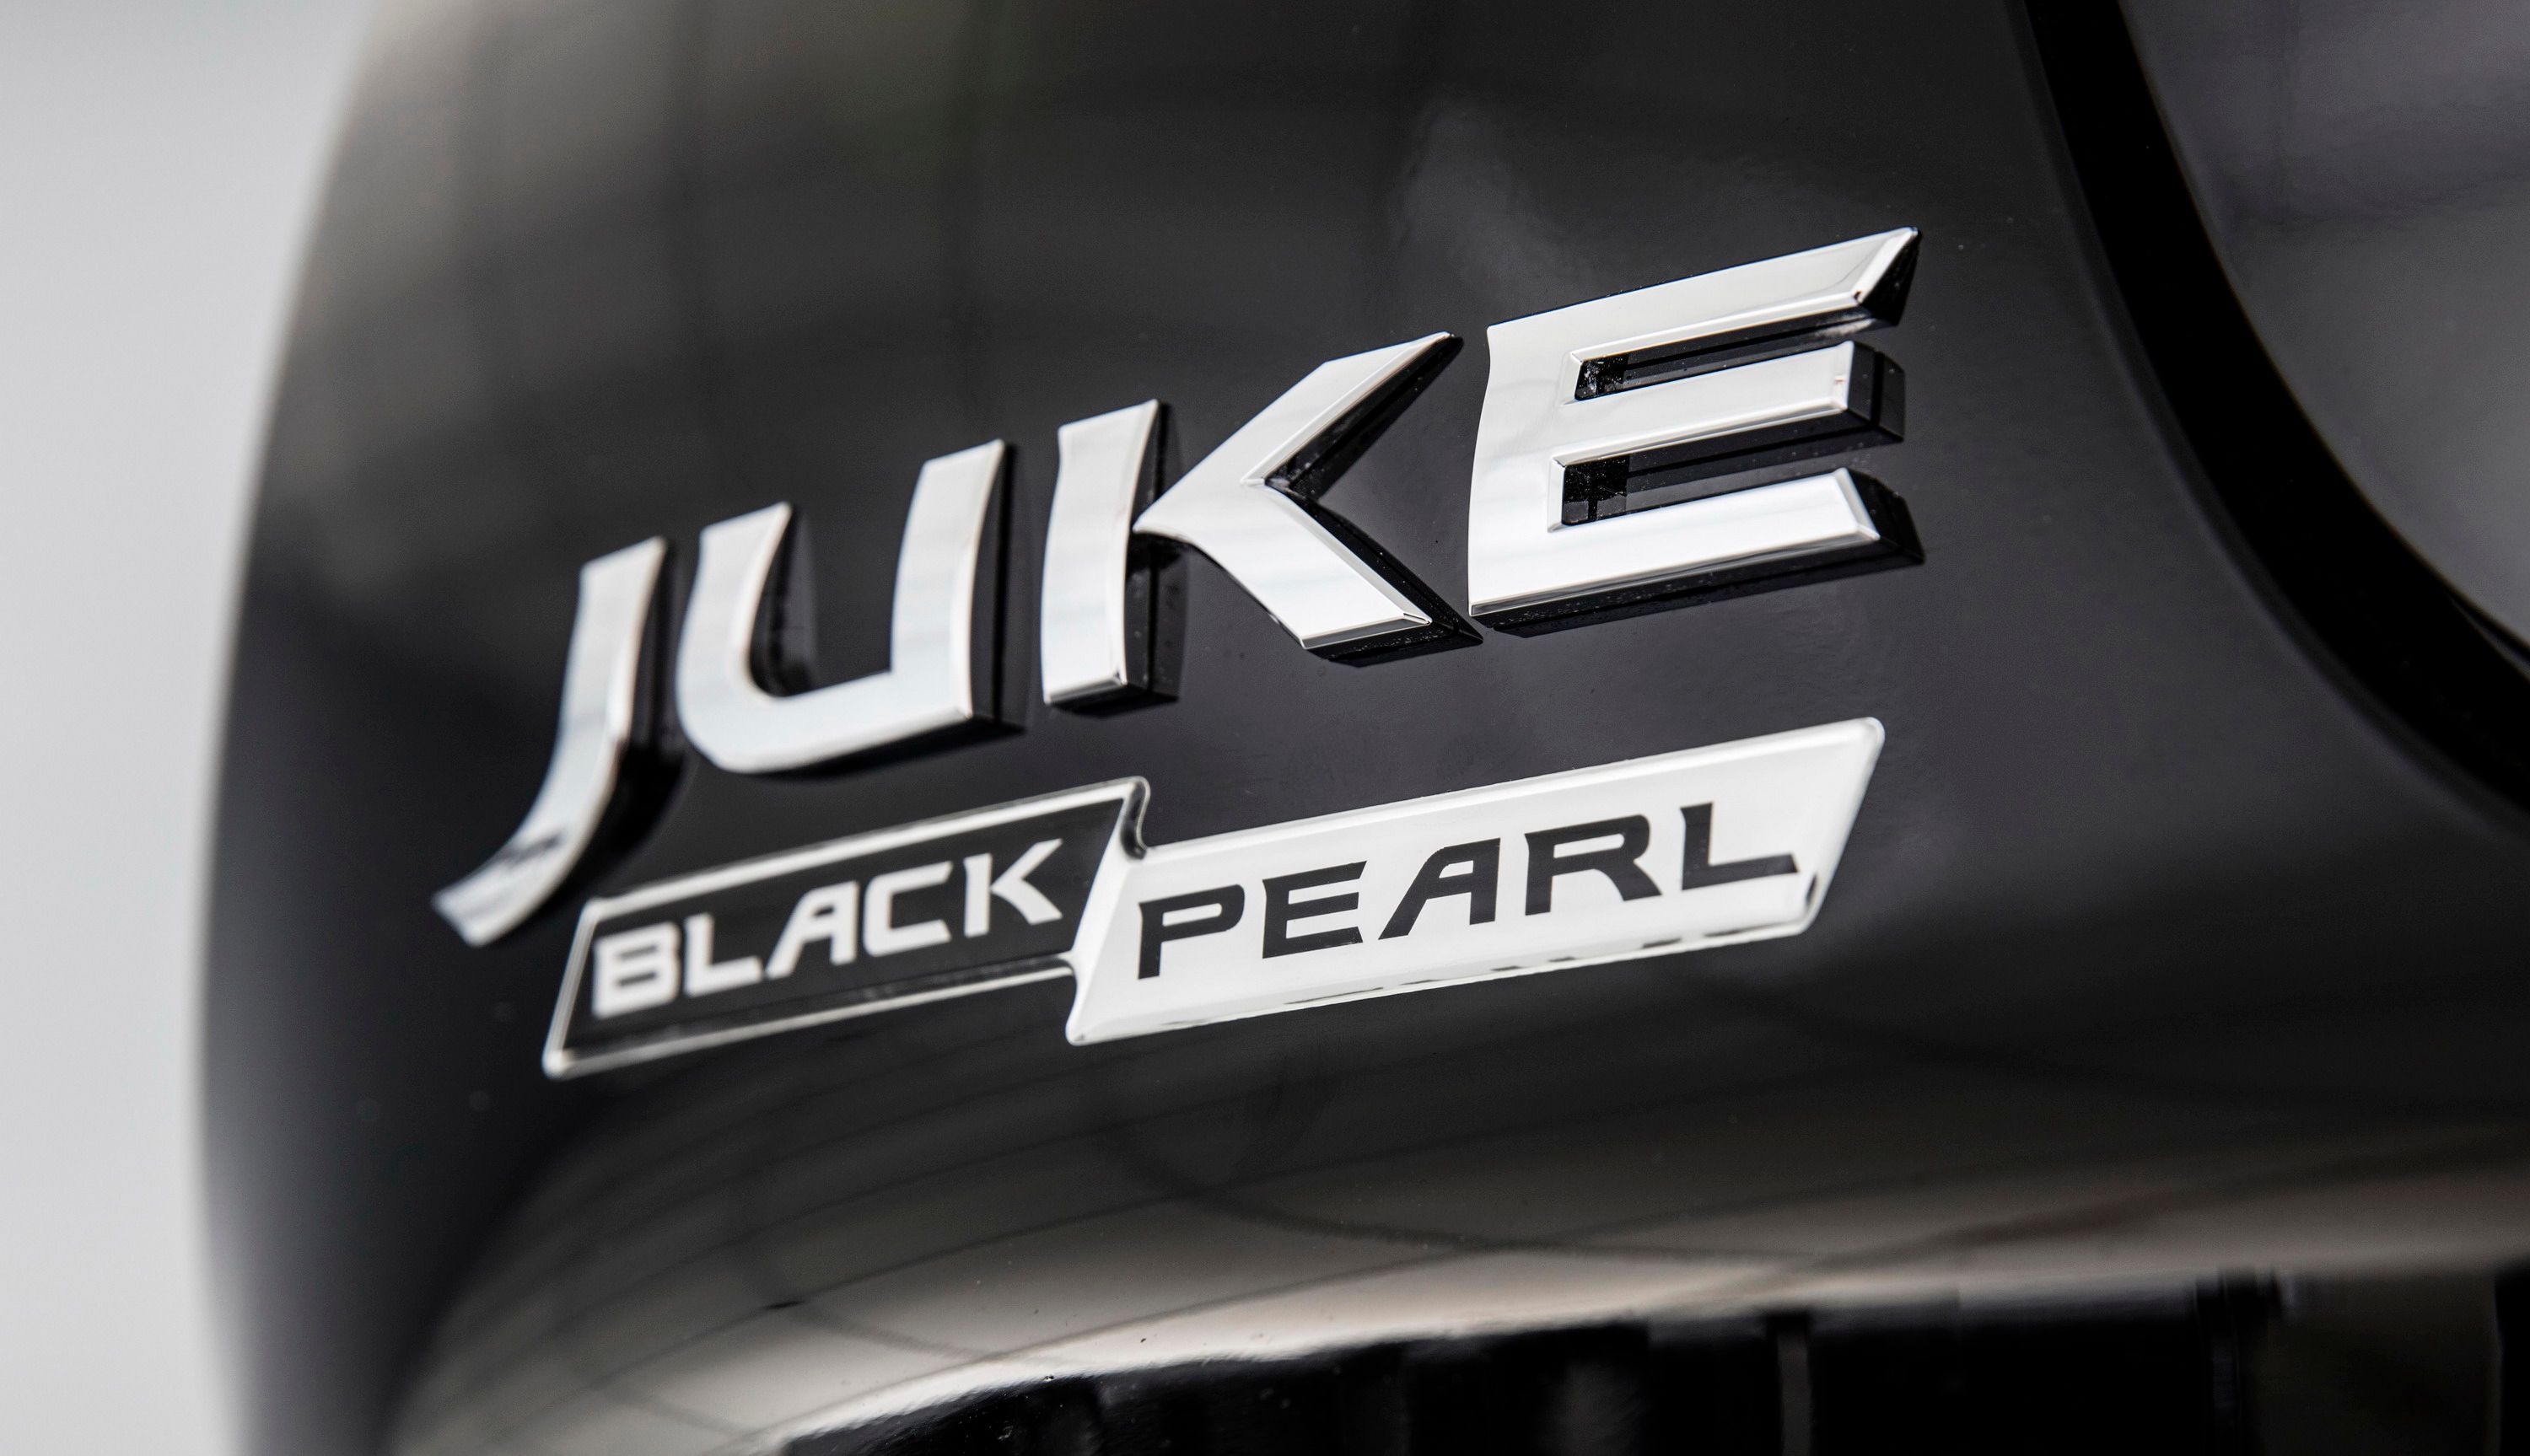 2017 Nissan Juke Black Pearl Edition